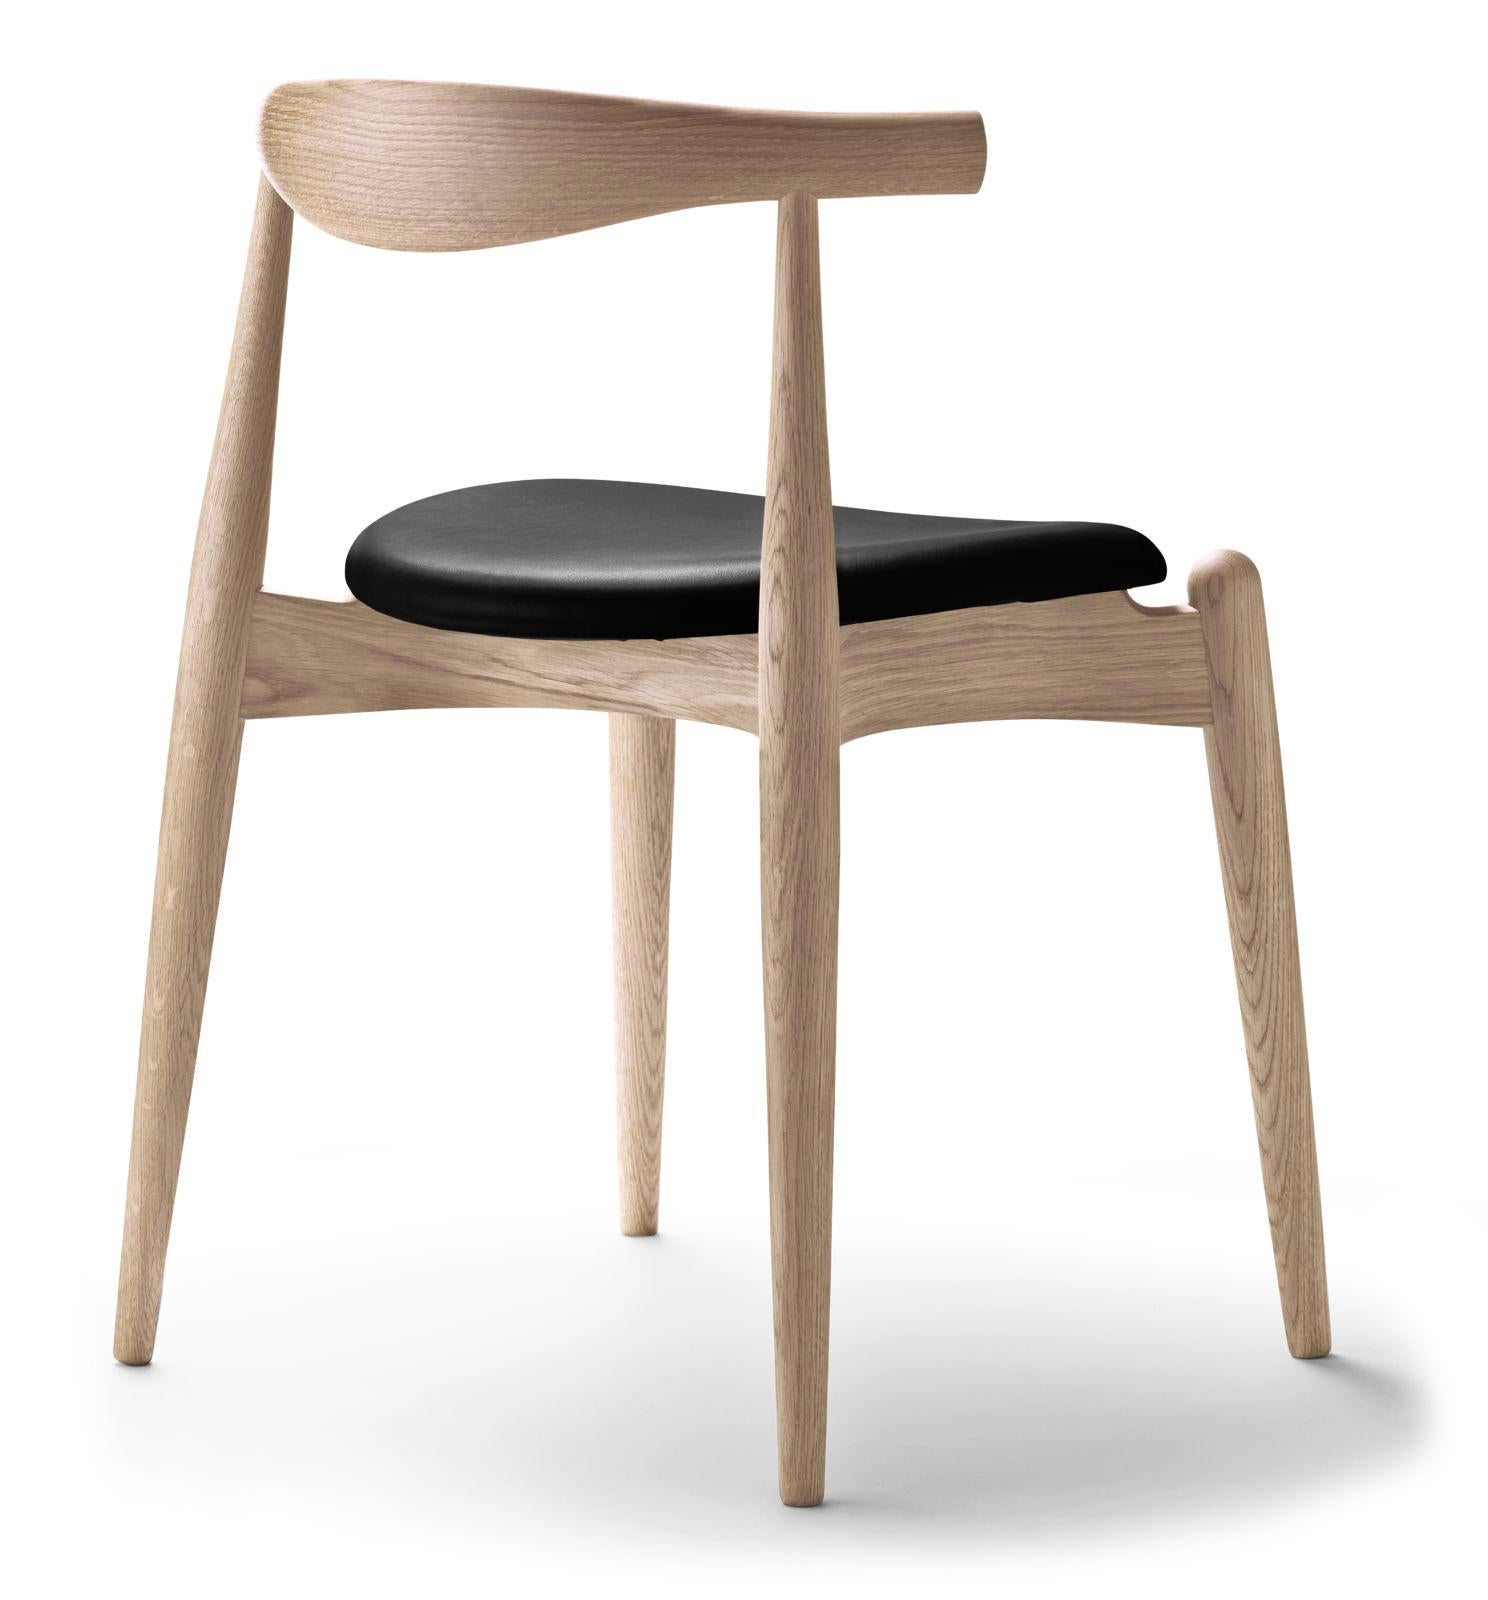 Hans J. Wegner a conçu la chaise Elbow empilable en 1956. Après avoir fabriqué deux prototypes, il a mis de côté la conception de la chaise, qui nécessitait une production intensive, dans ses archives, où elle est restée pendant près d'un